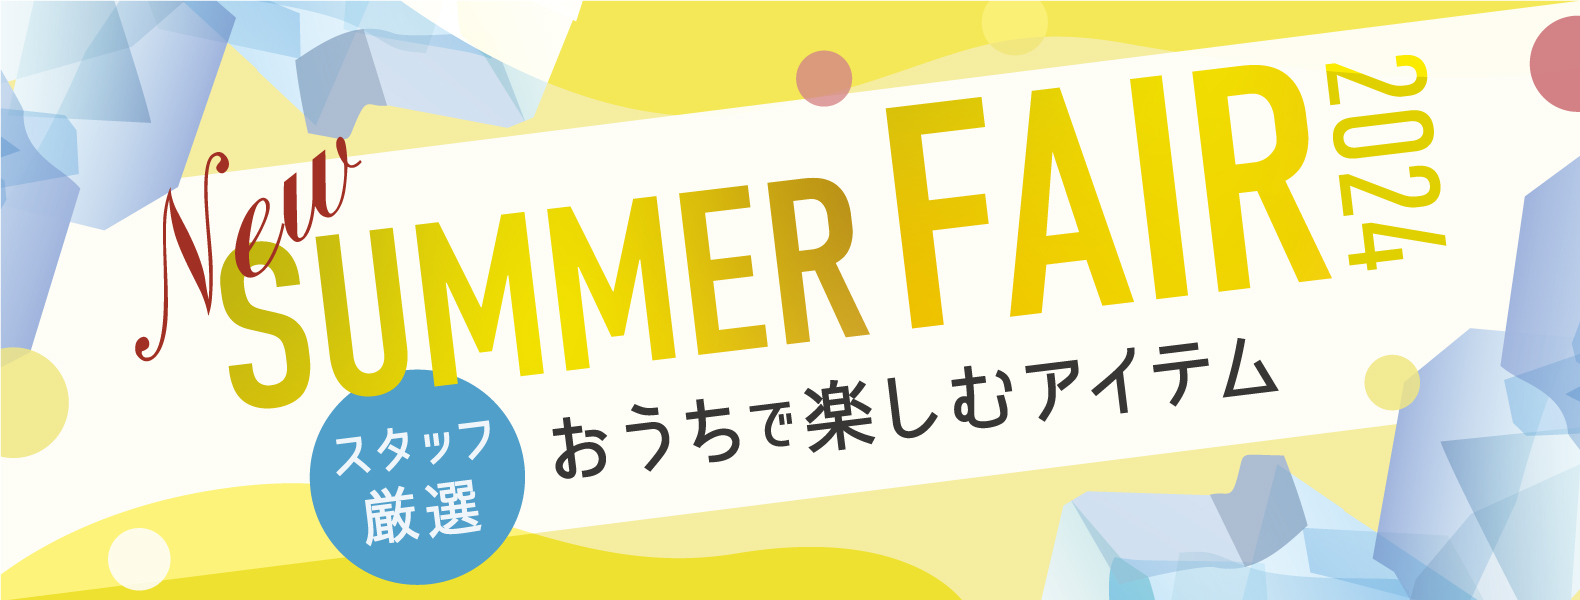 (日本語) SUMMER-FAIR_pickup